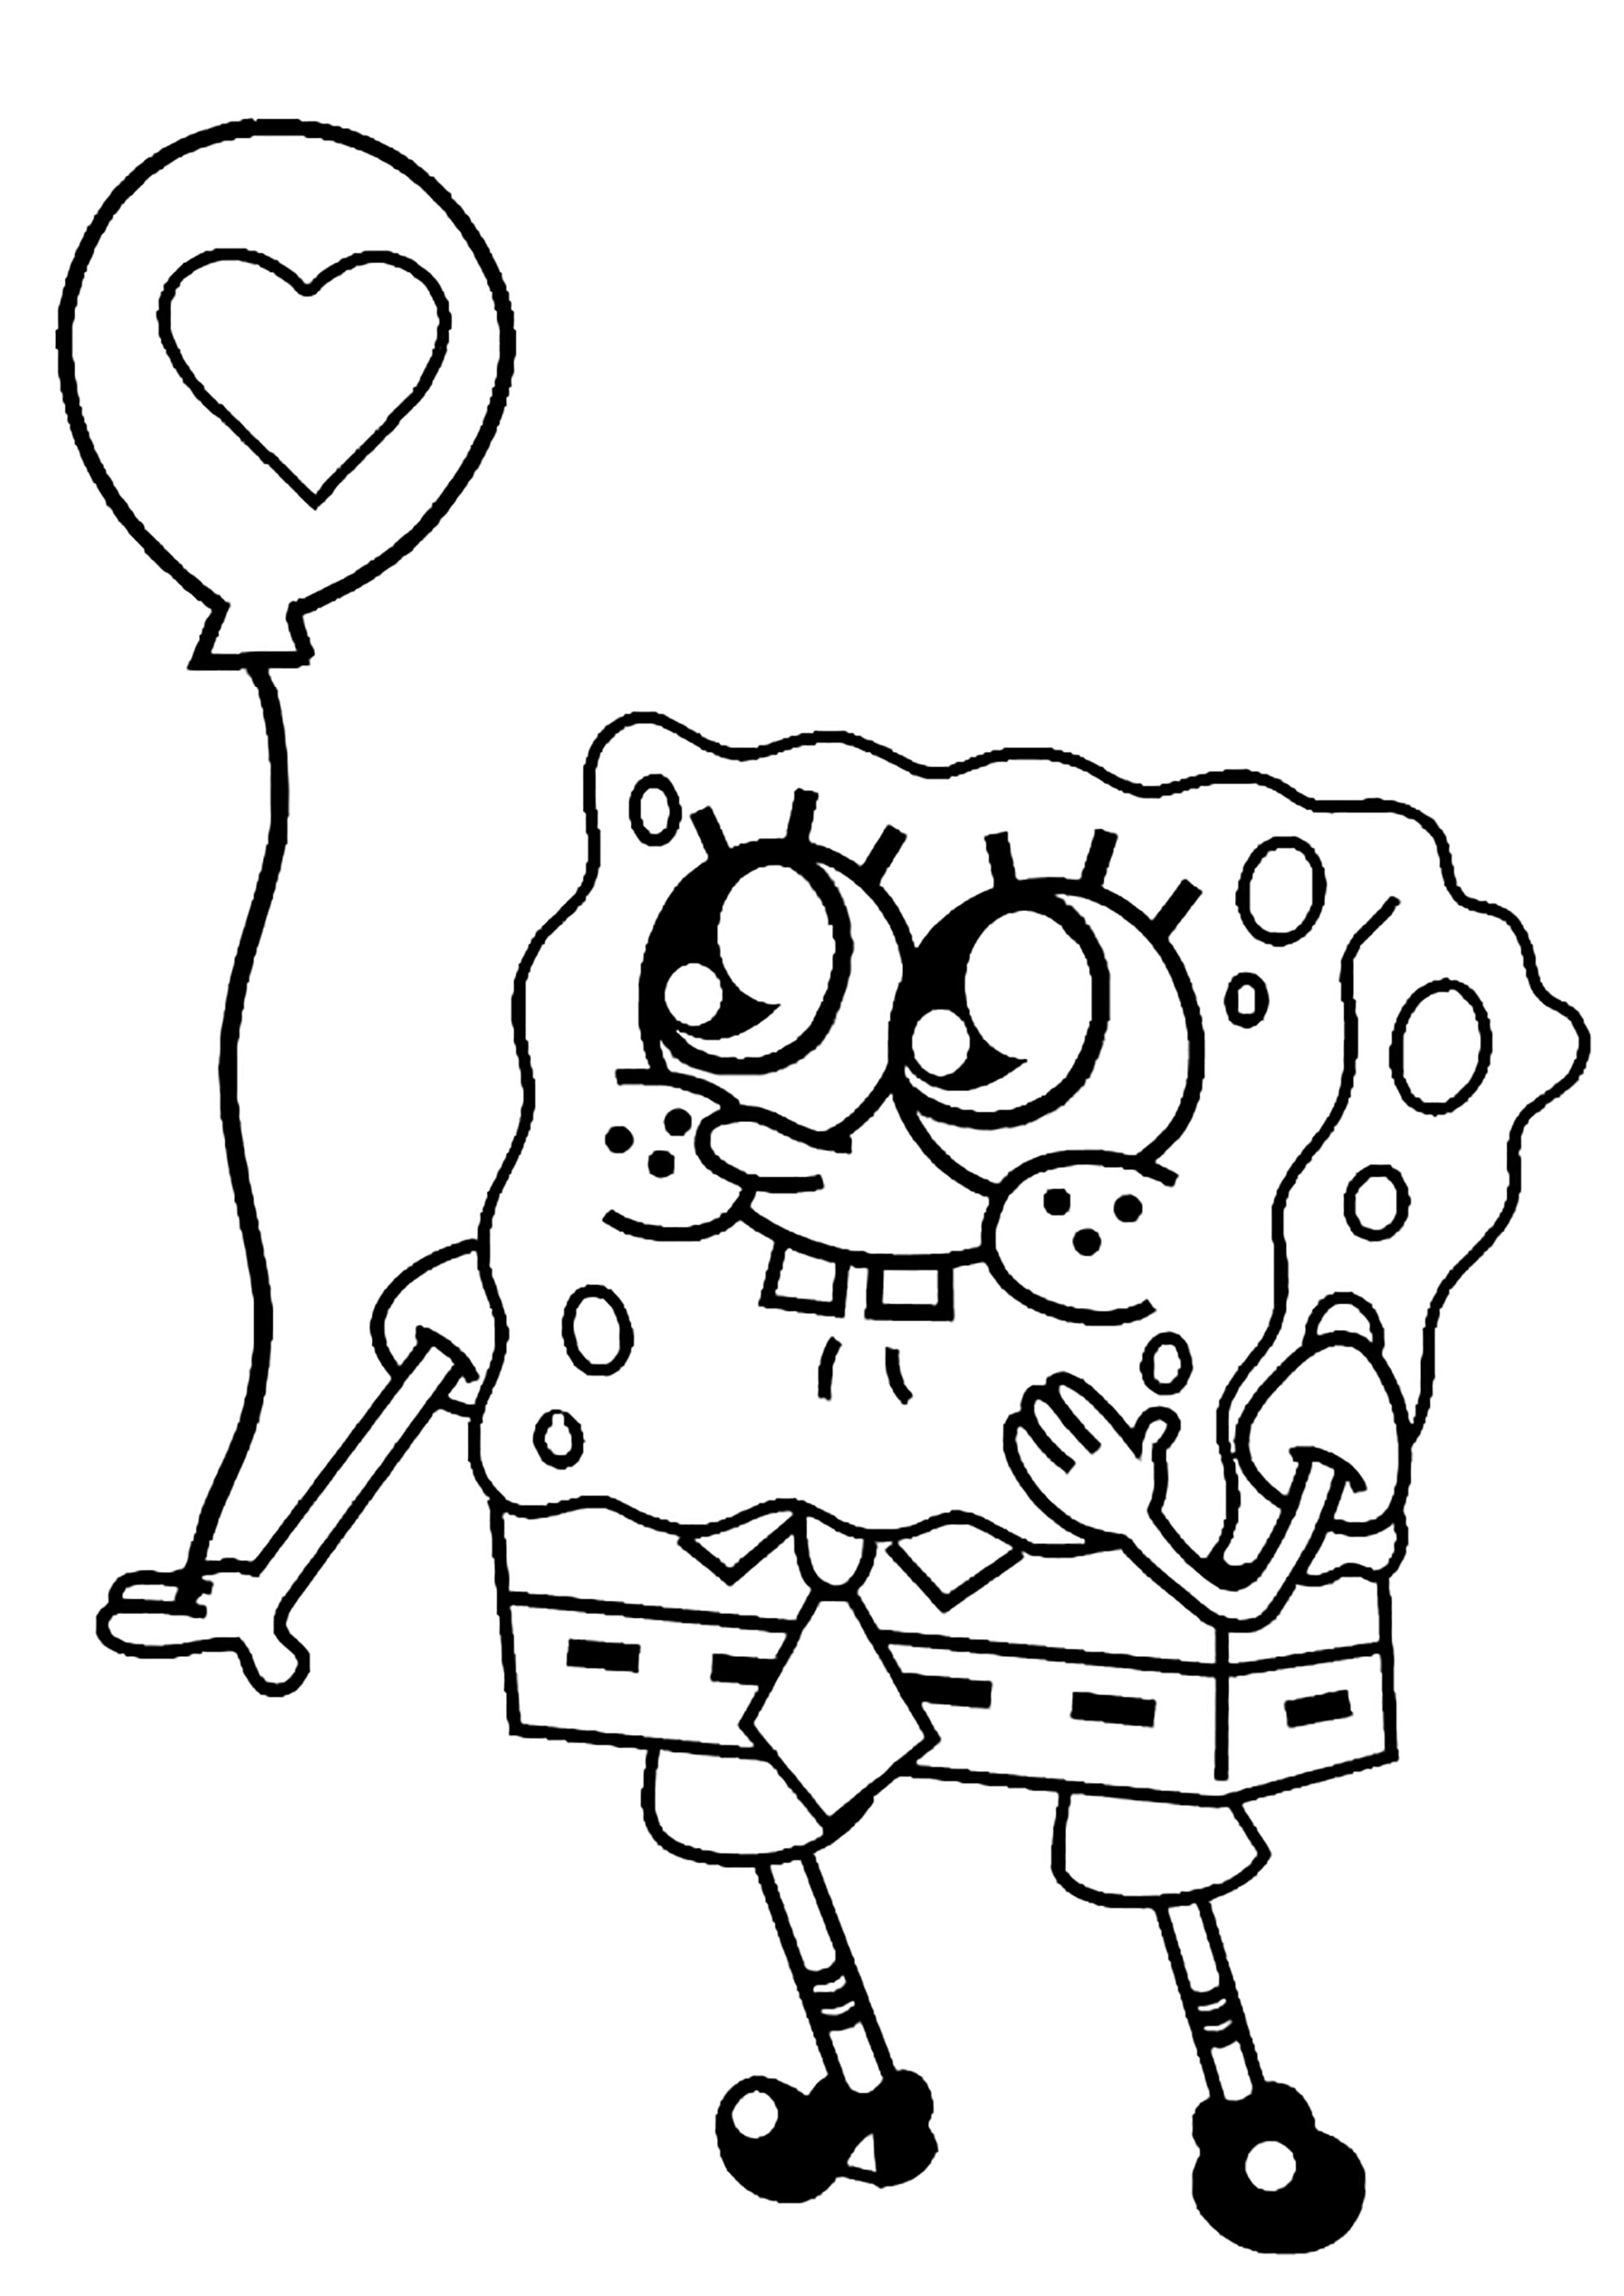 Desenho simples do Bob Esponja para colorir, com um balão com o desenho de um coração